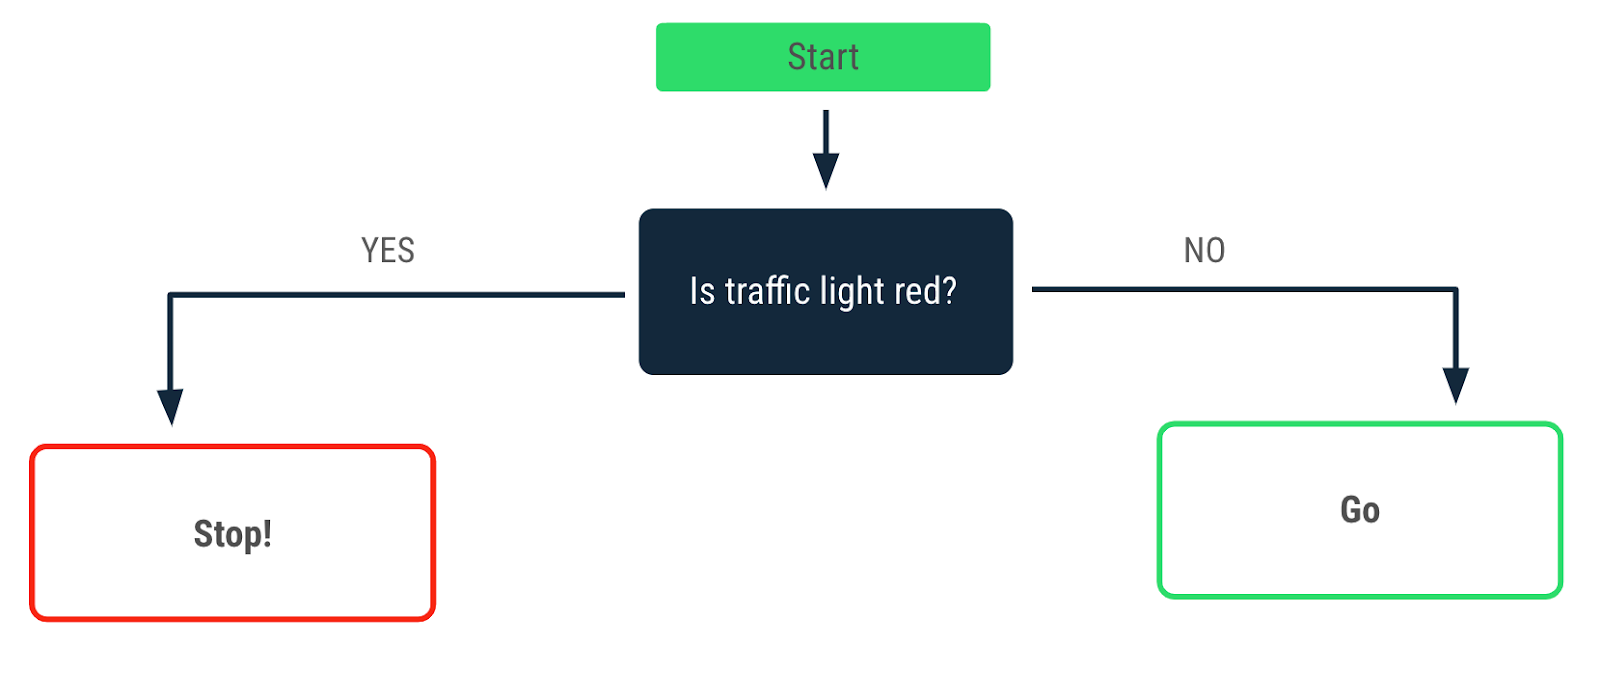 신호등이 빨간색일 때 내리는 결정을 설명하는 플로우 차트 '예' 화살표는 'Stop' 메시지를 가리킵니다. '아니요' 화살표는 'Go' 메시지를 가리킵니다.